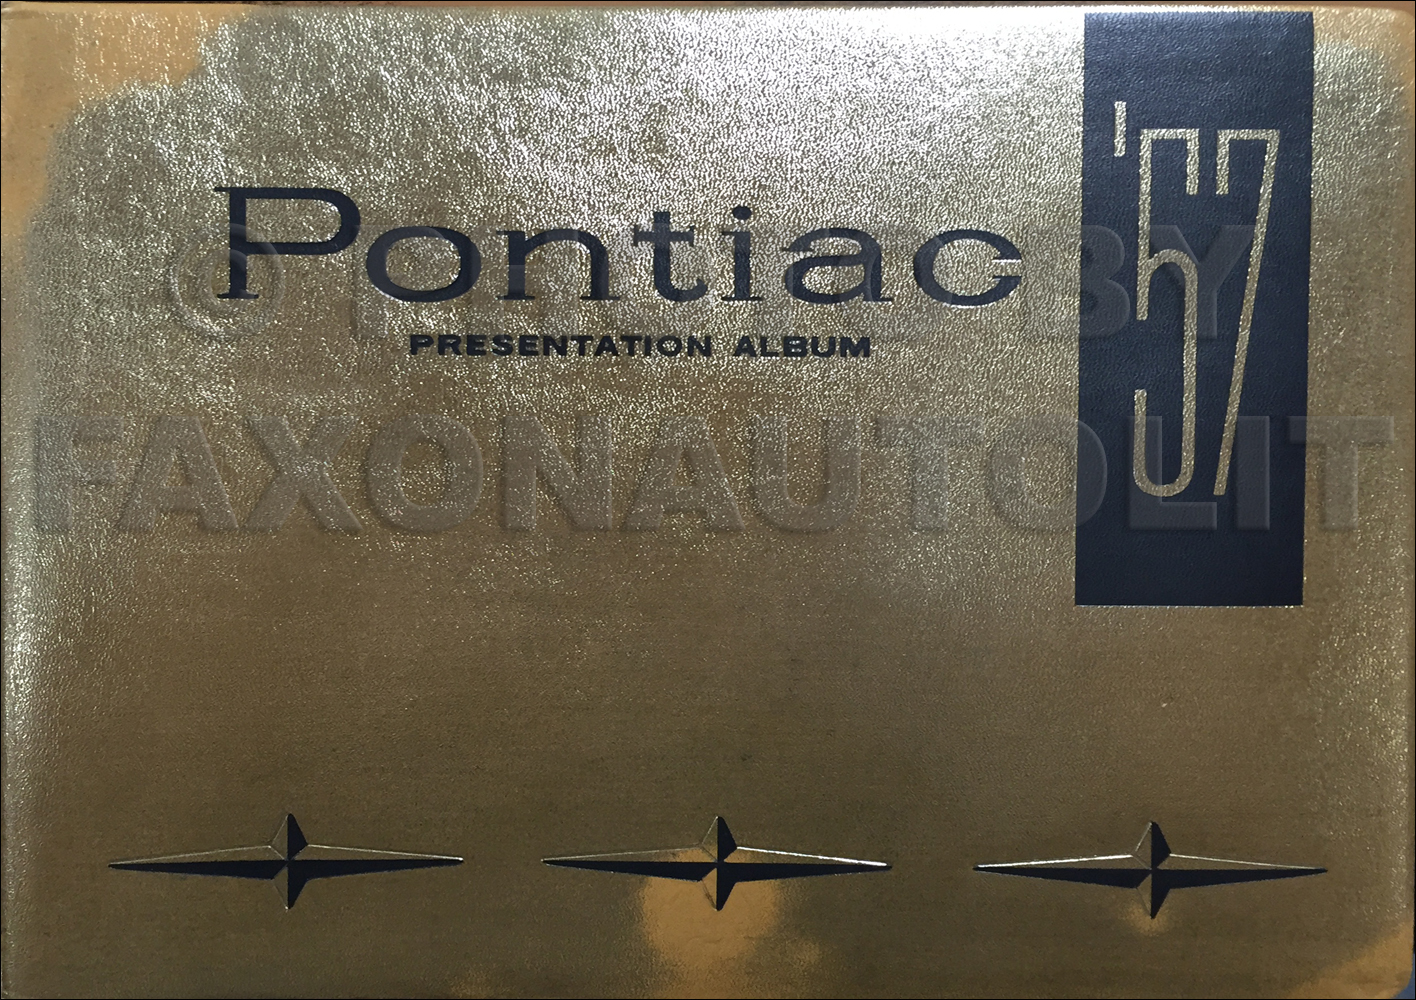 1957 Pontiac Presentation Dealer Album